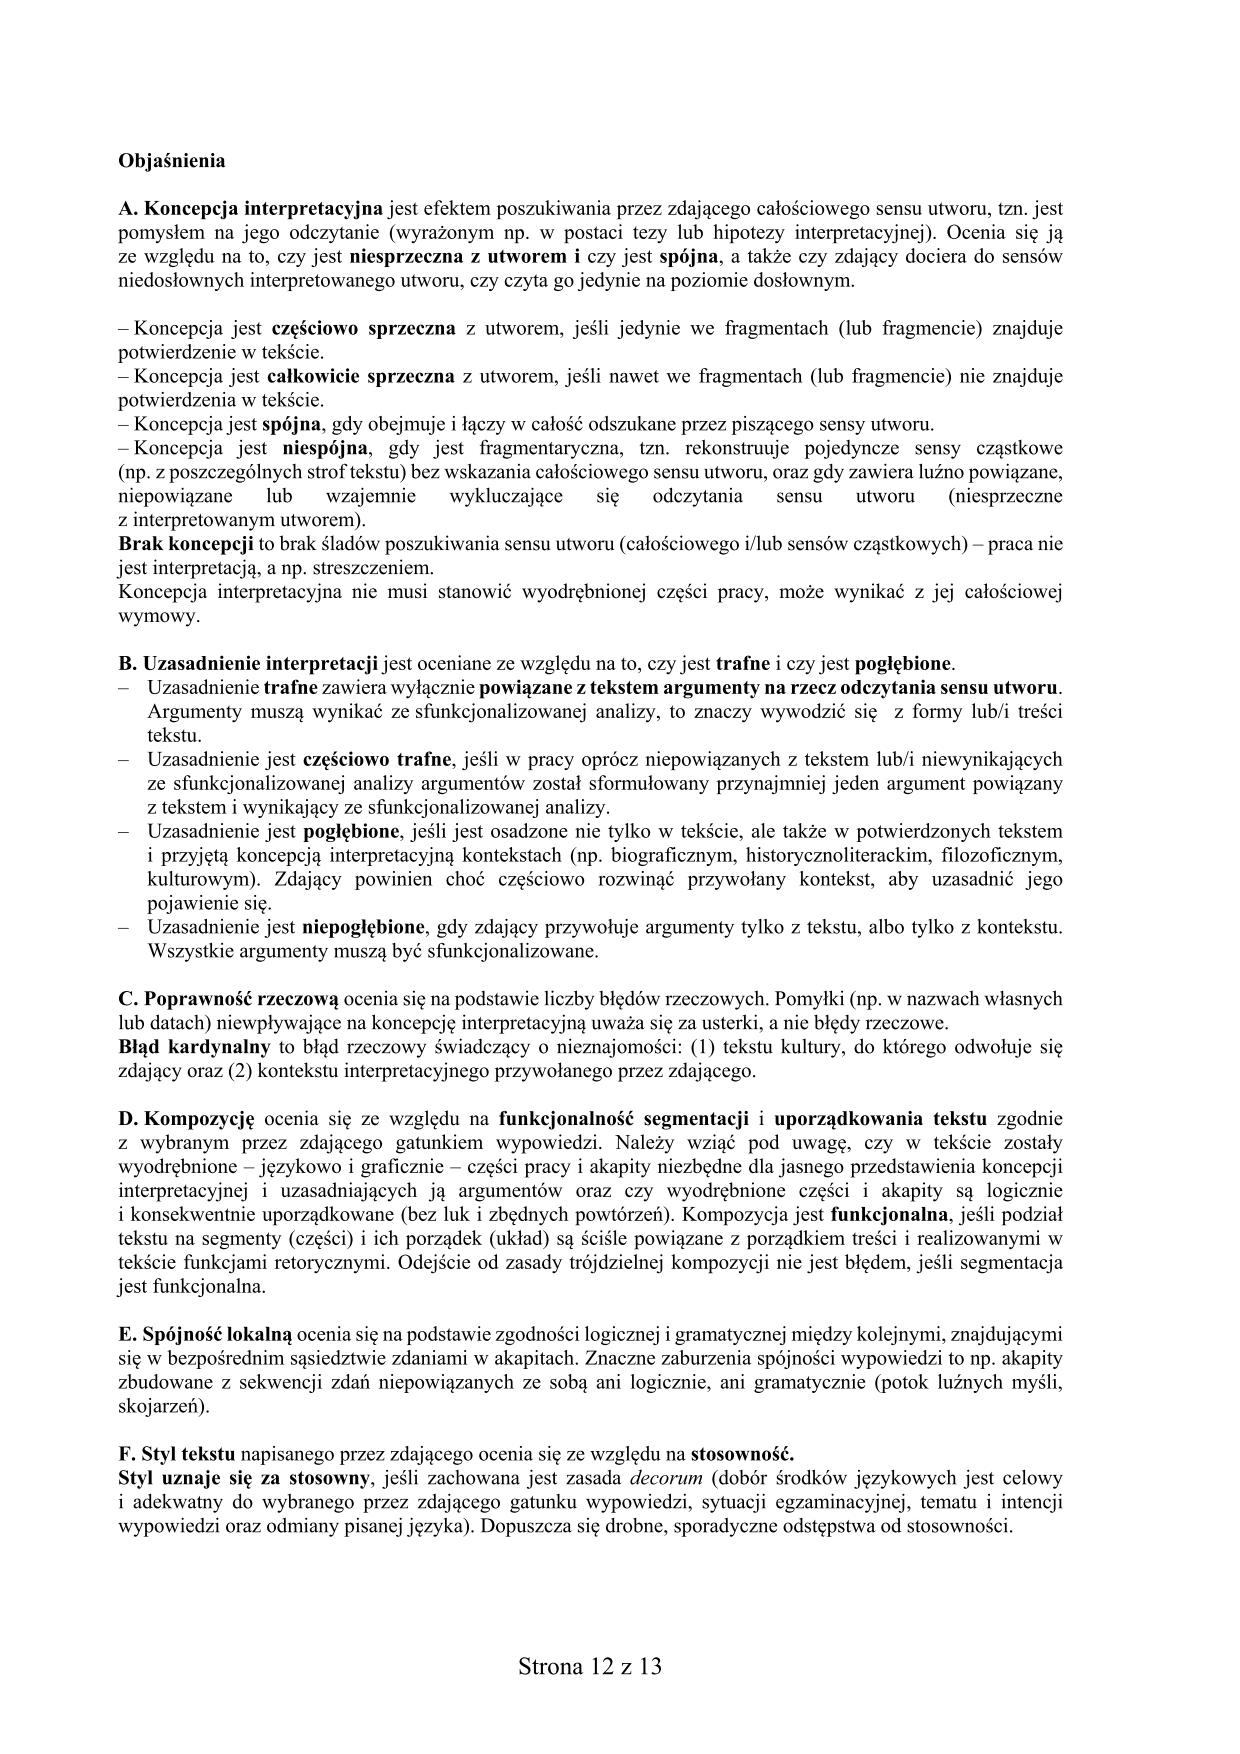 odpowiedzi-jezyk-ukrainski-poziom-podstawowy-matura-2017 - 12